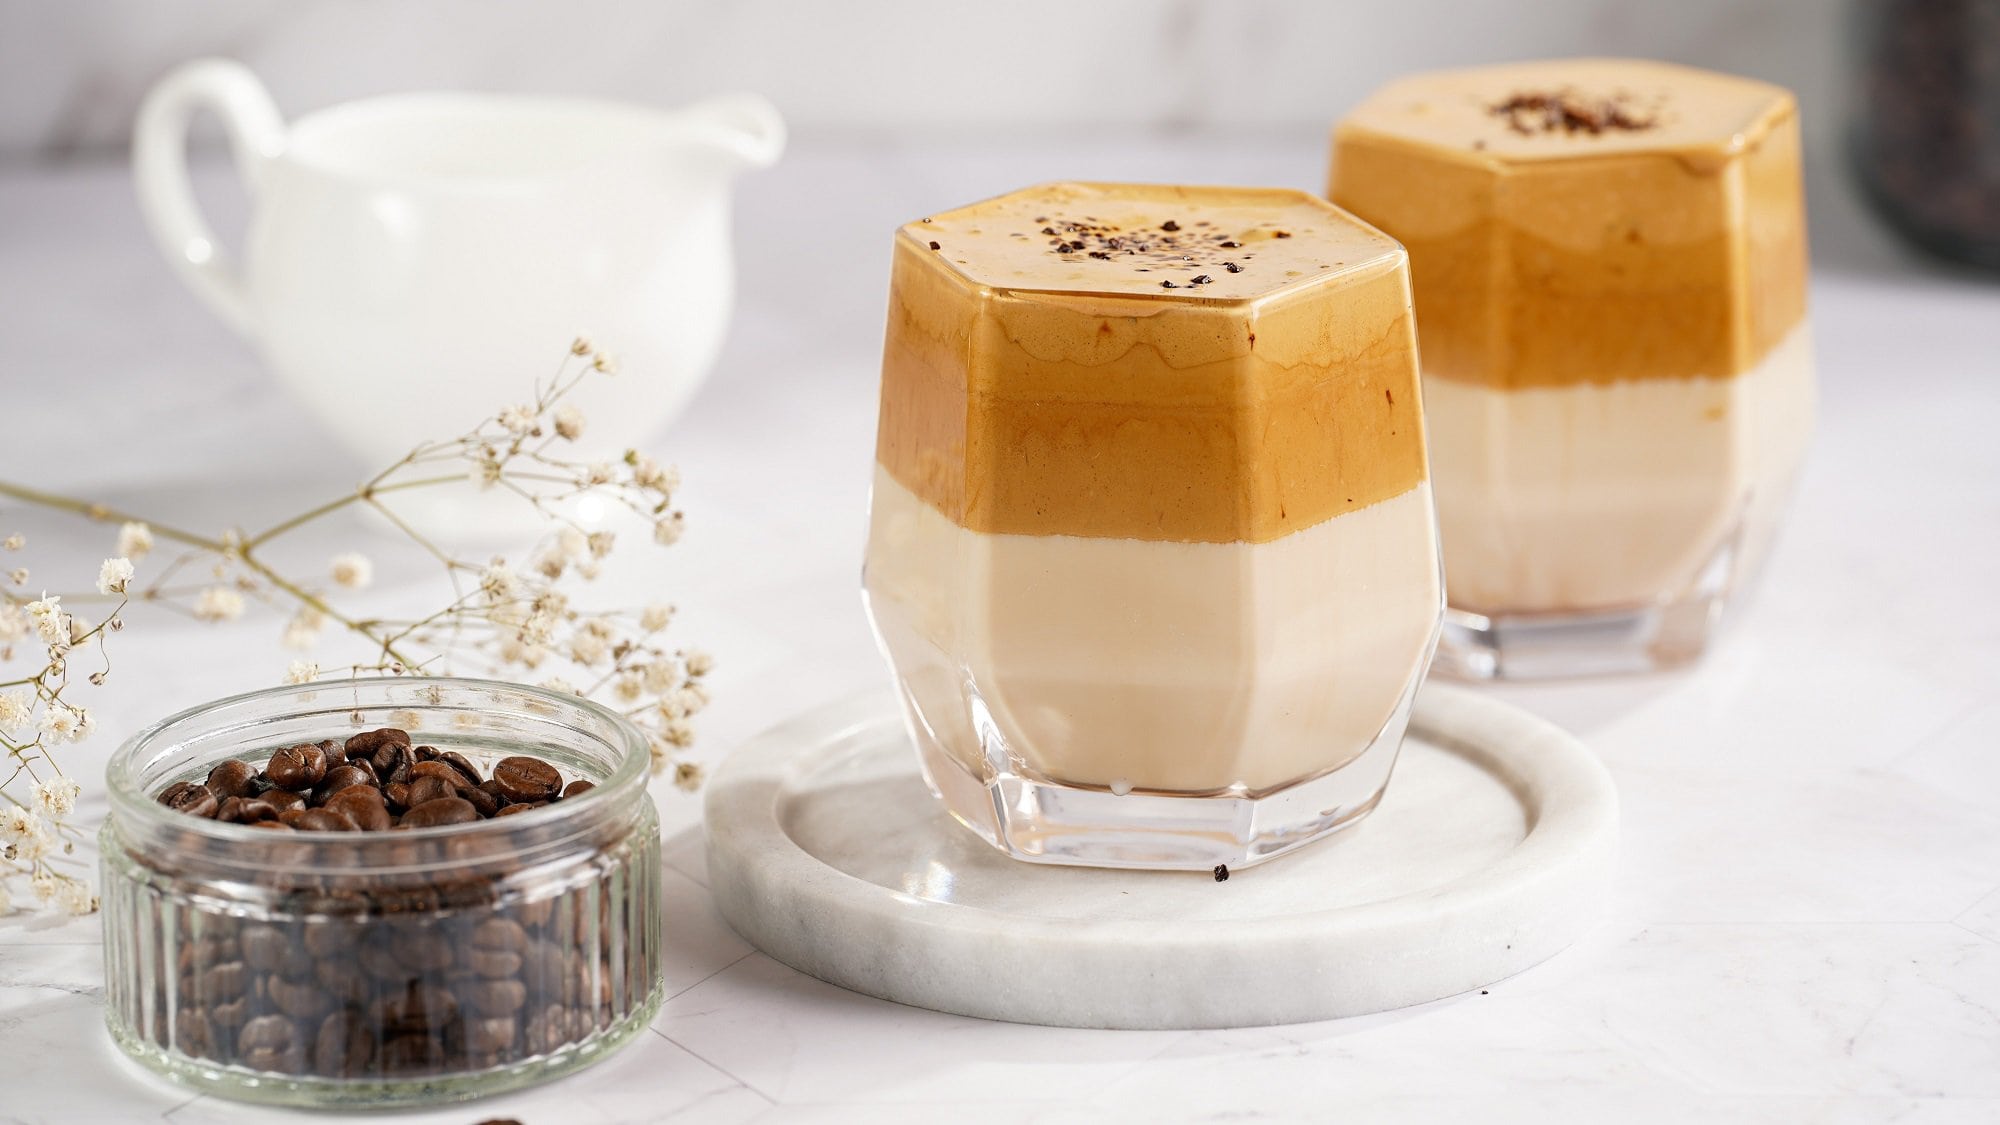 2 Gläser Dalgona Pumpkin Spice Latte, eins davon auf einem weißen Marmor-Untersetzer, daneben eine Schale mit Kaffeebohnen und ein Milchkännchen.